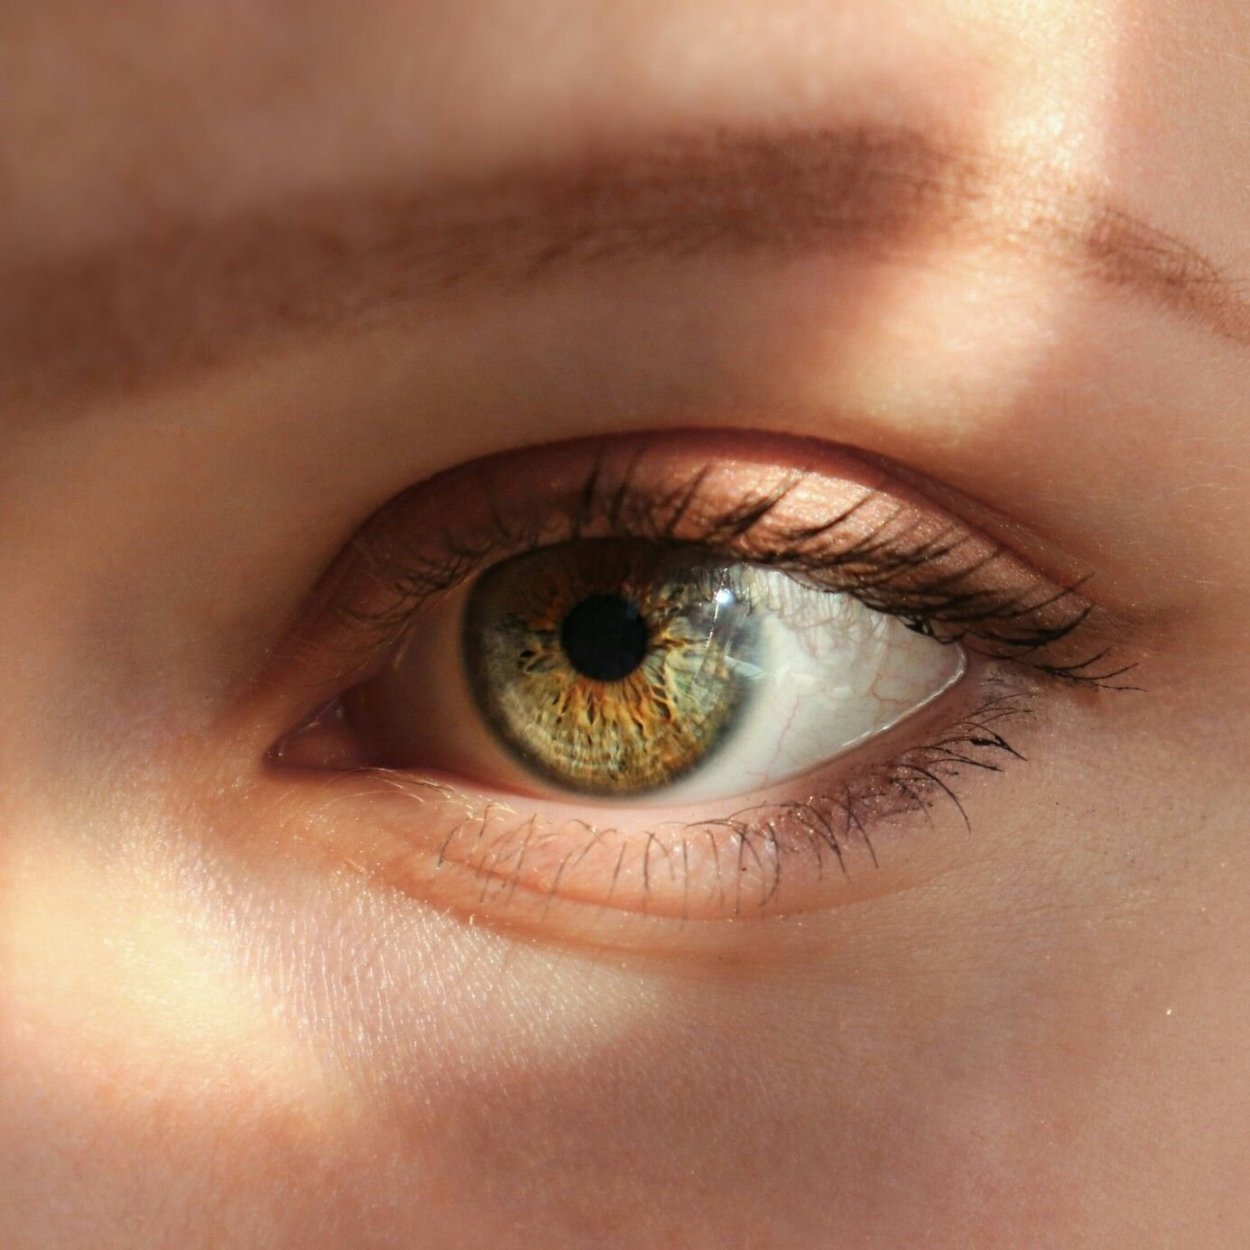 Светло серо карие глаза. Болотный цвет глаз гетерохромия. Коричнево зеленые глаза. Зелено янтарные глаза. Зелёно- янтарные олаза.